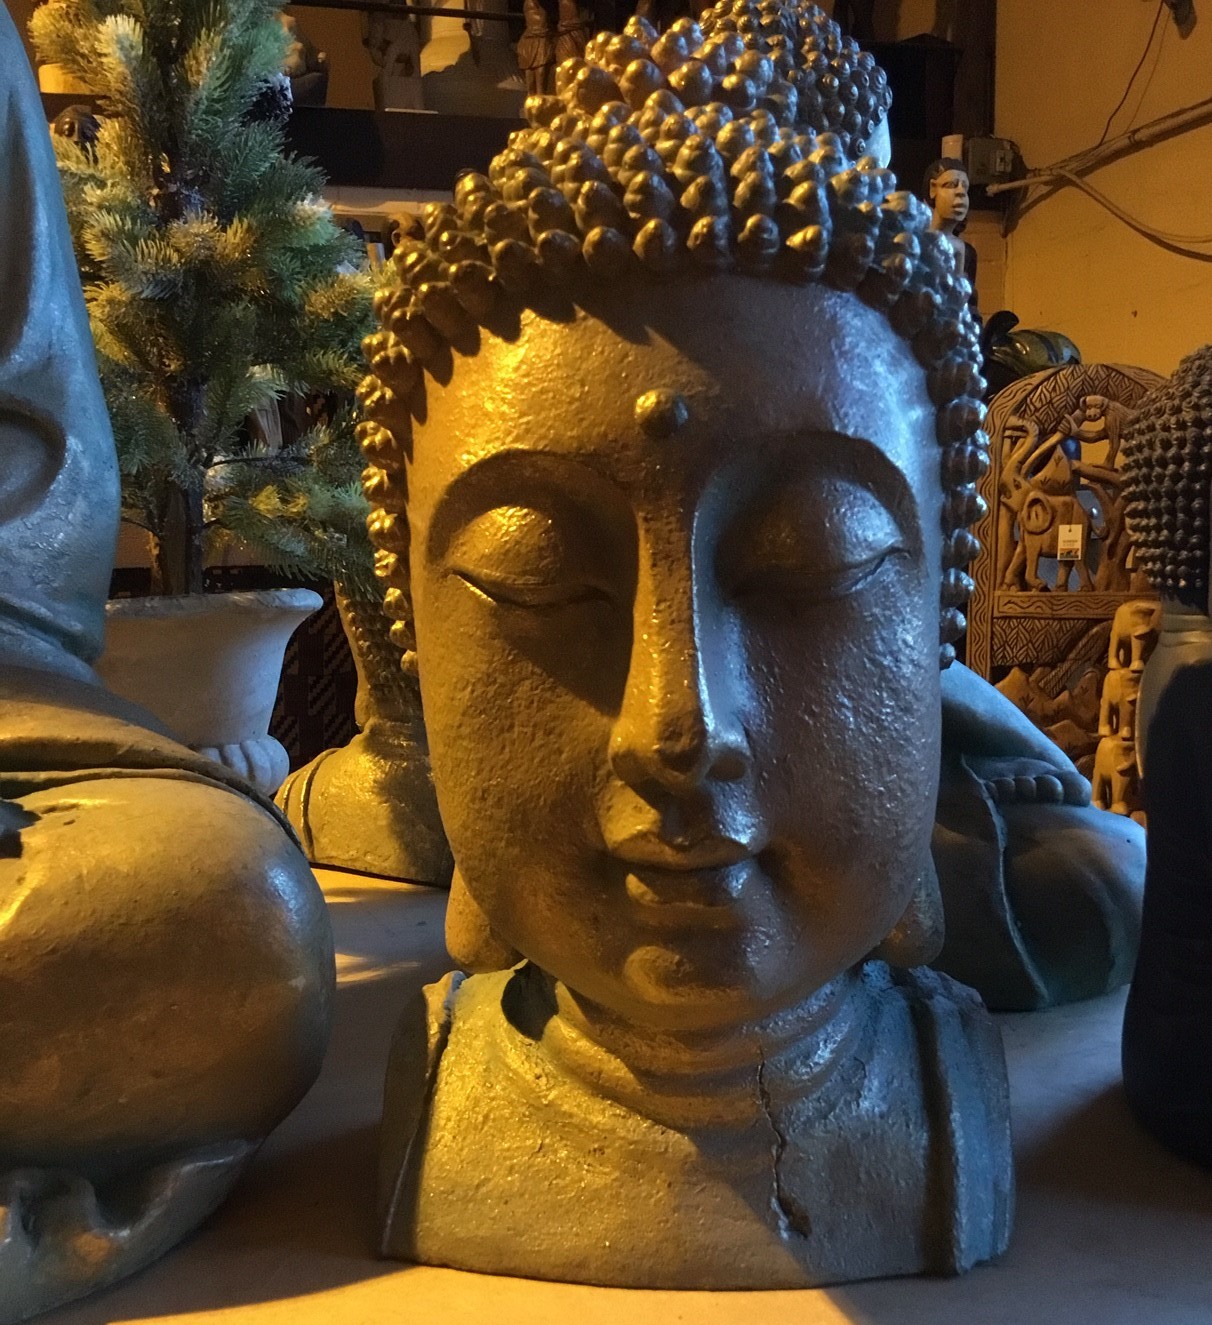 Budda head